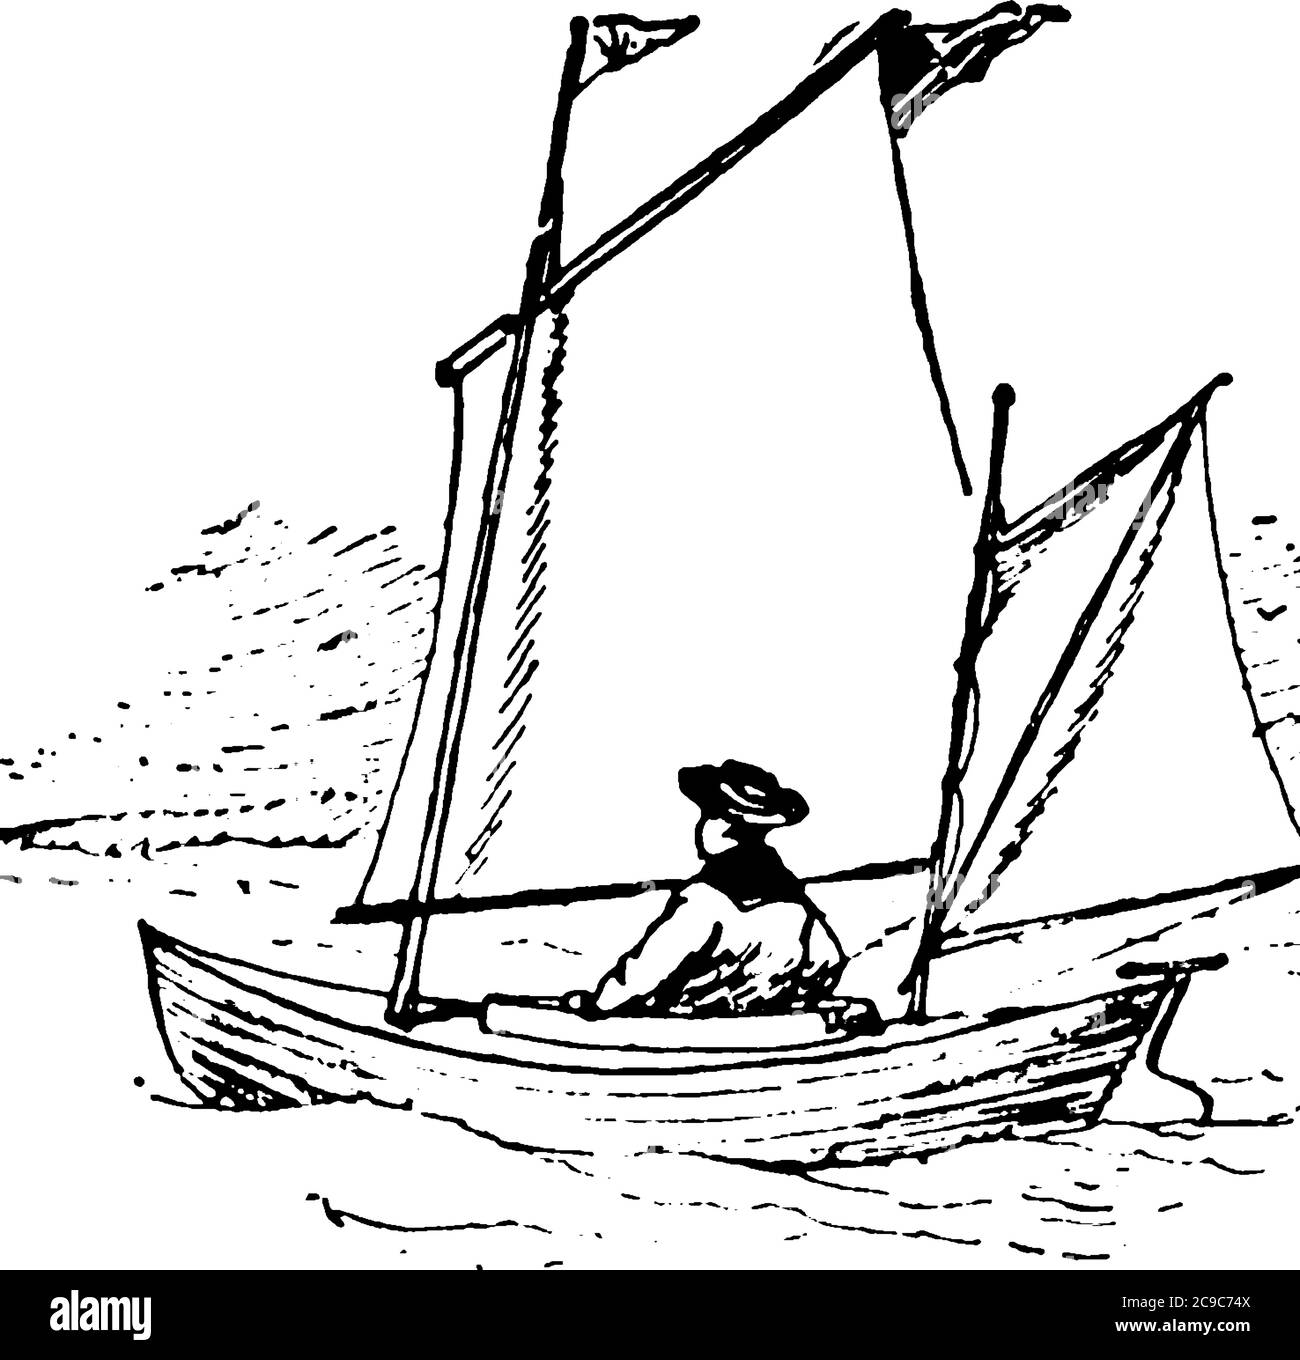 Mann Kanufahren auf einem kleinen Fluss, vintage Linie Zeichnung oder Gravur Illustration. Stock Vektor